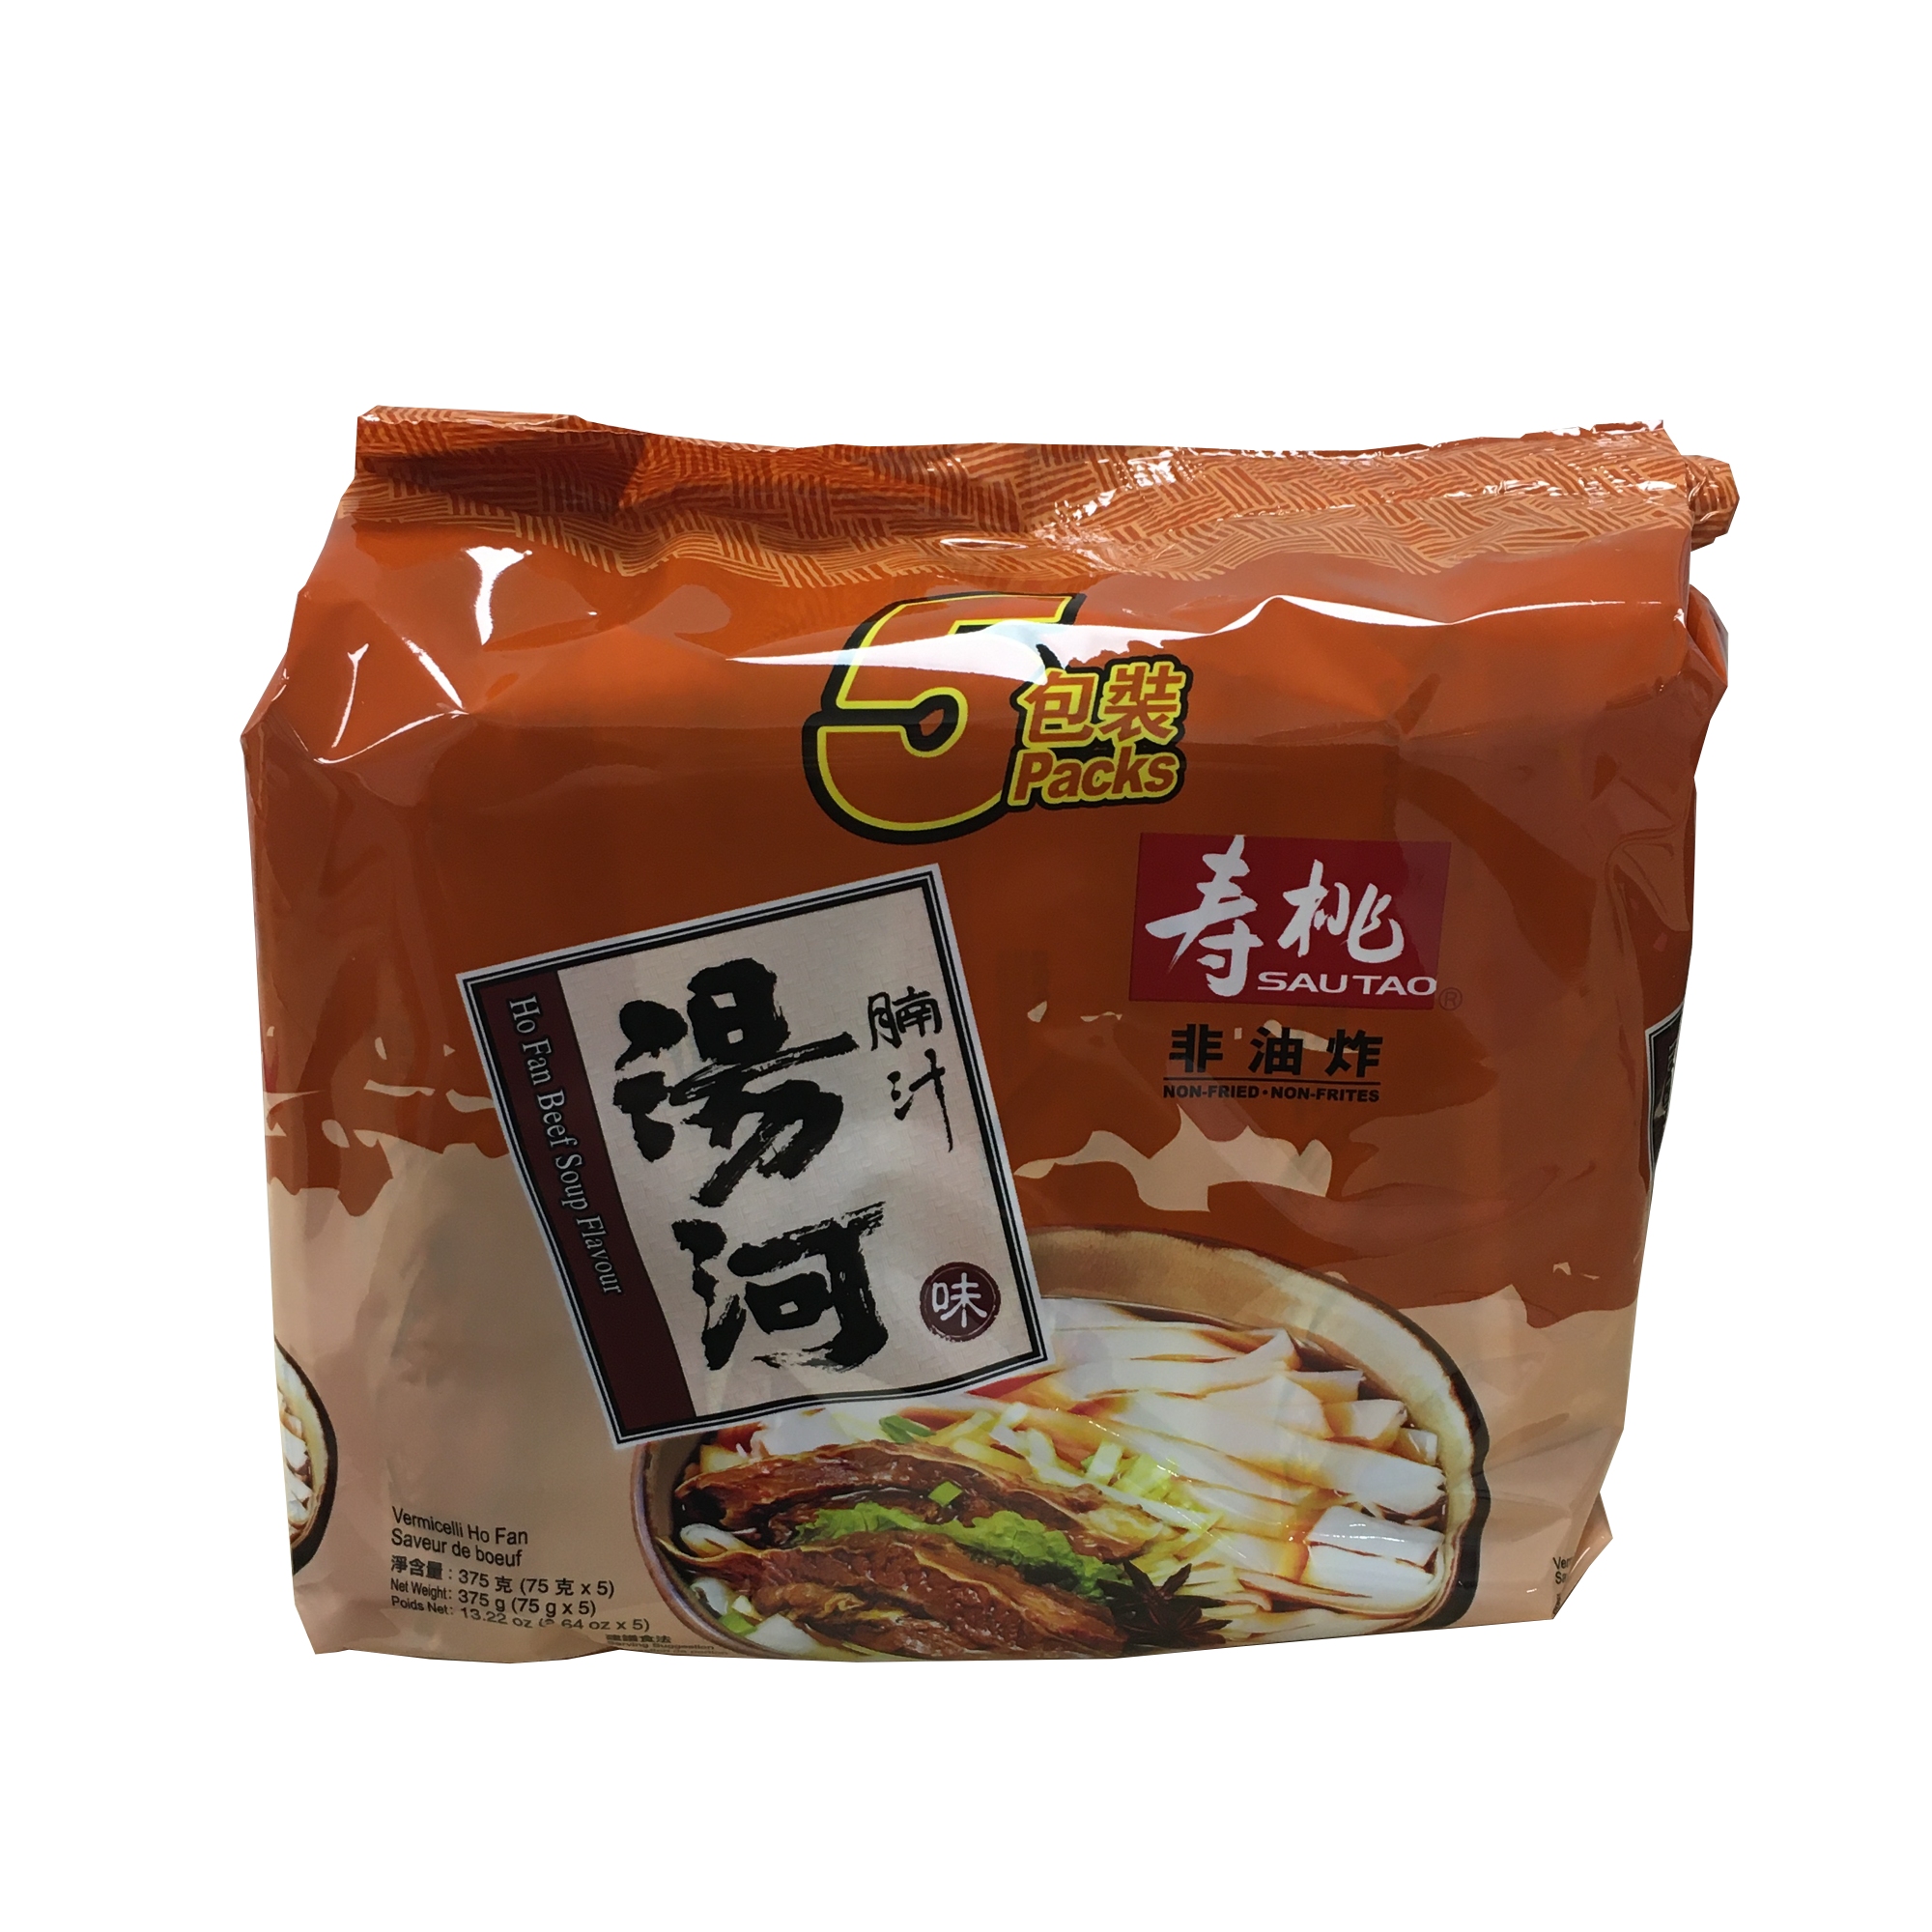 寿桃汤河腩汁味5包装 ND137012